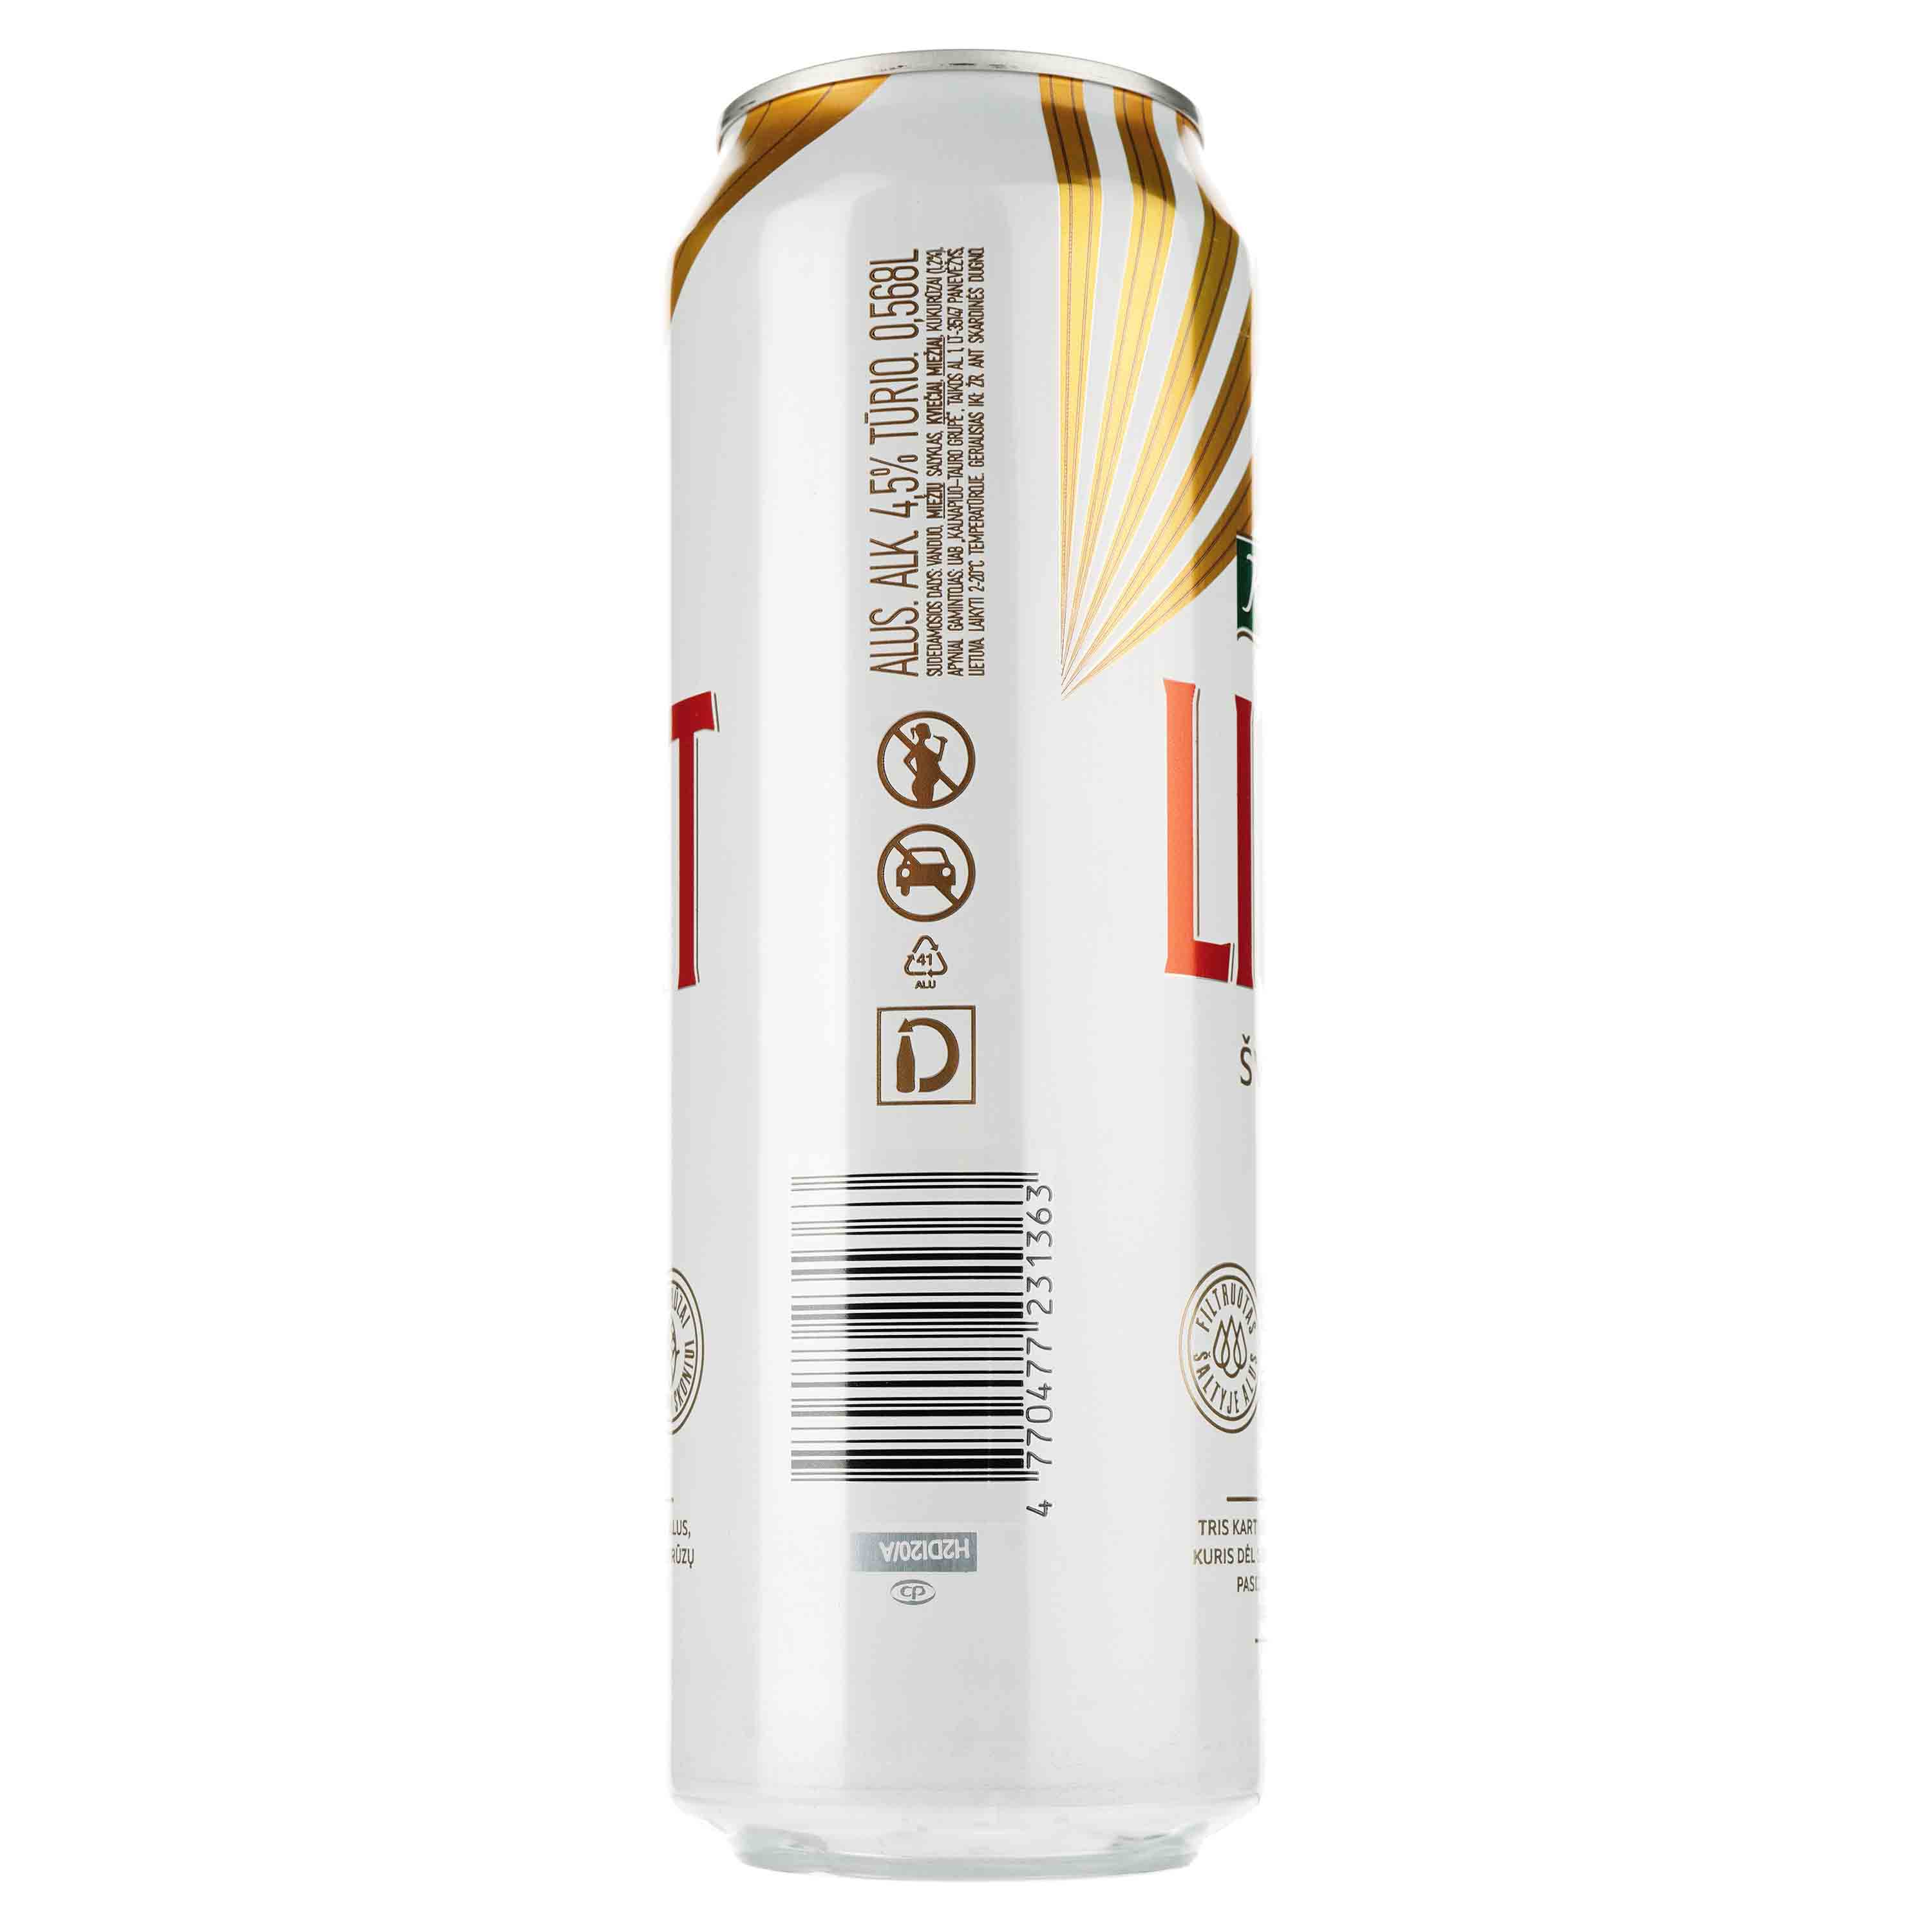 Пиво Kalnapilis Light, светлое, фильтрованное, 4,7%, ж/б, 0,568 л - фото 2